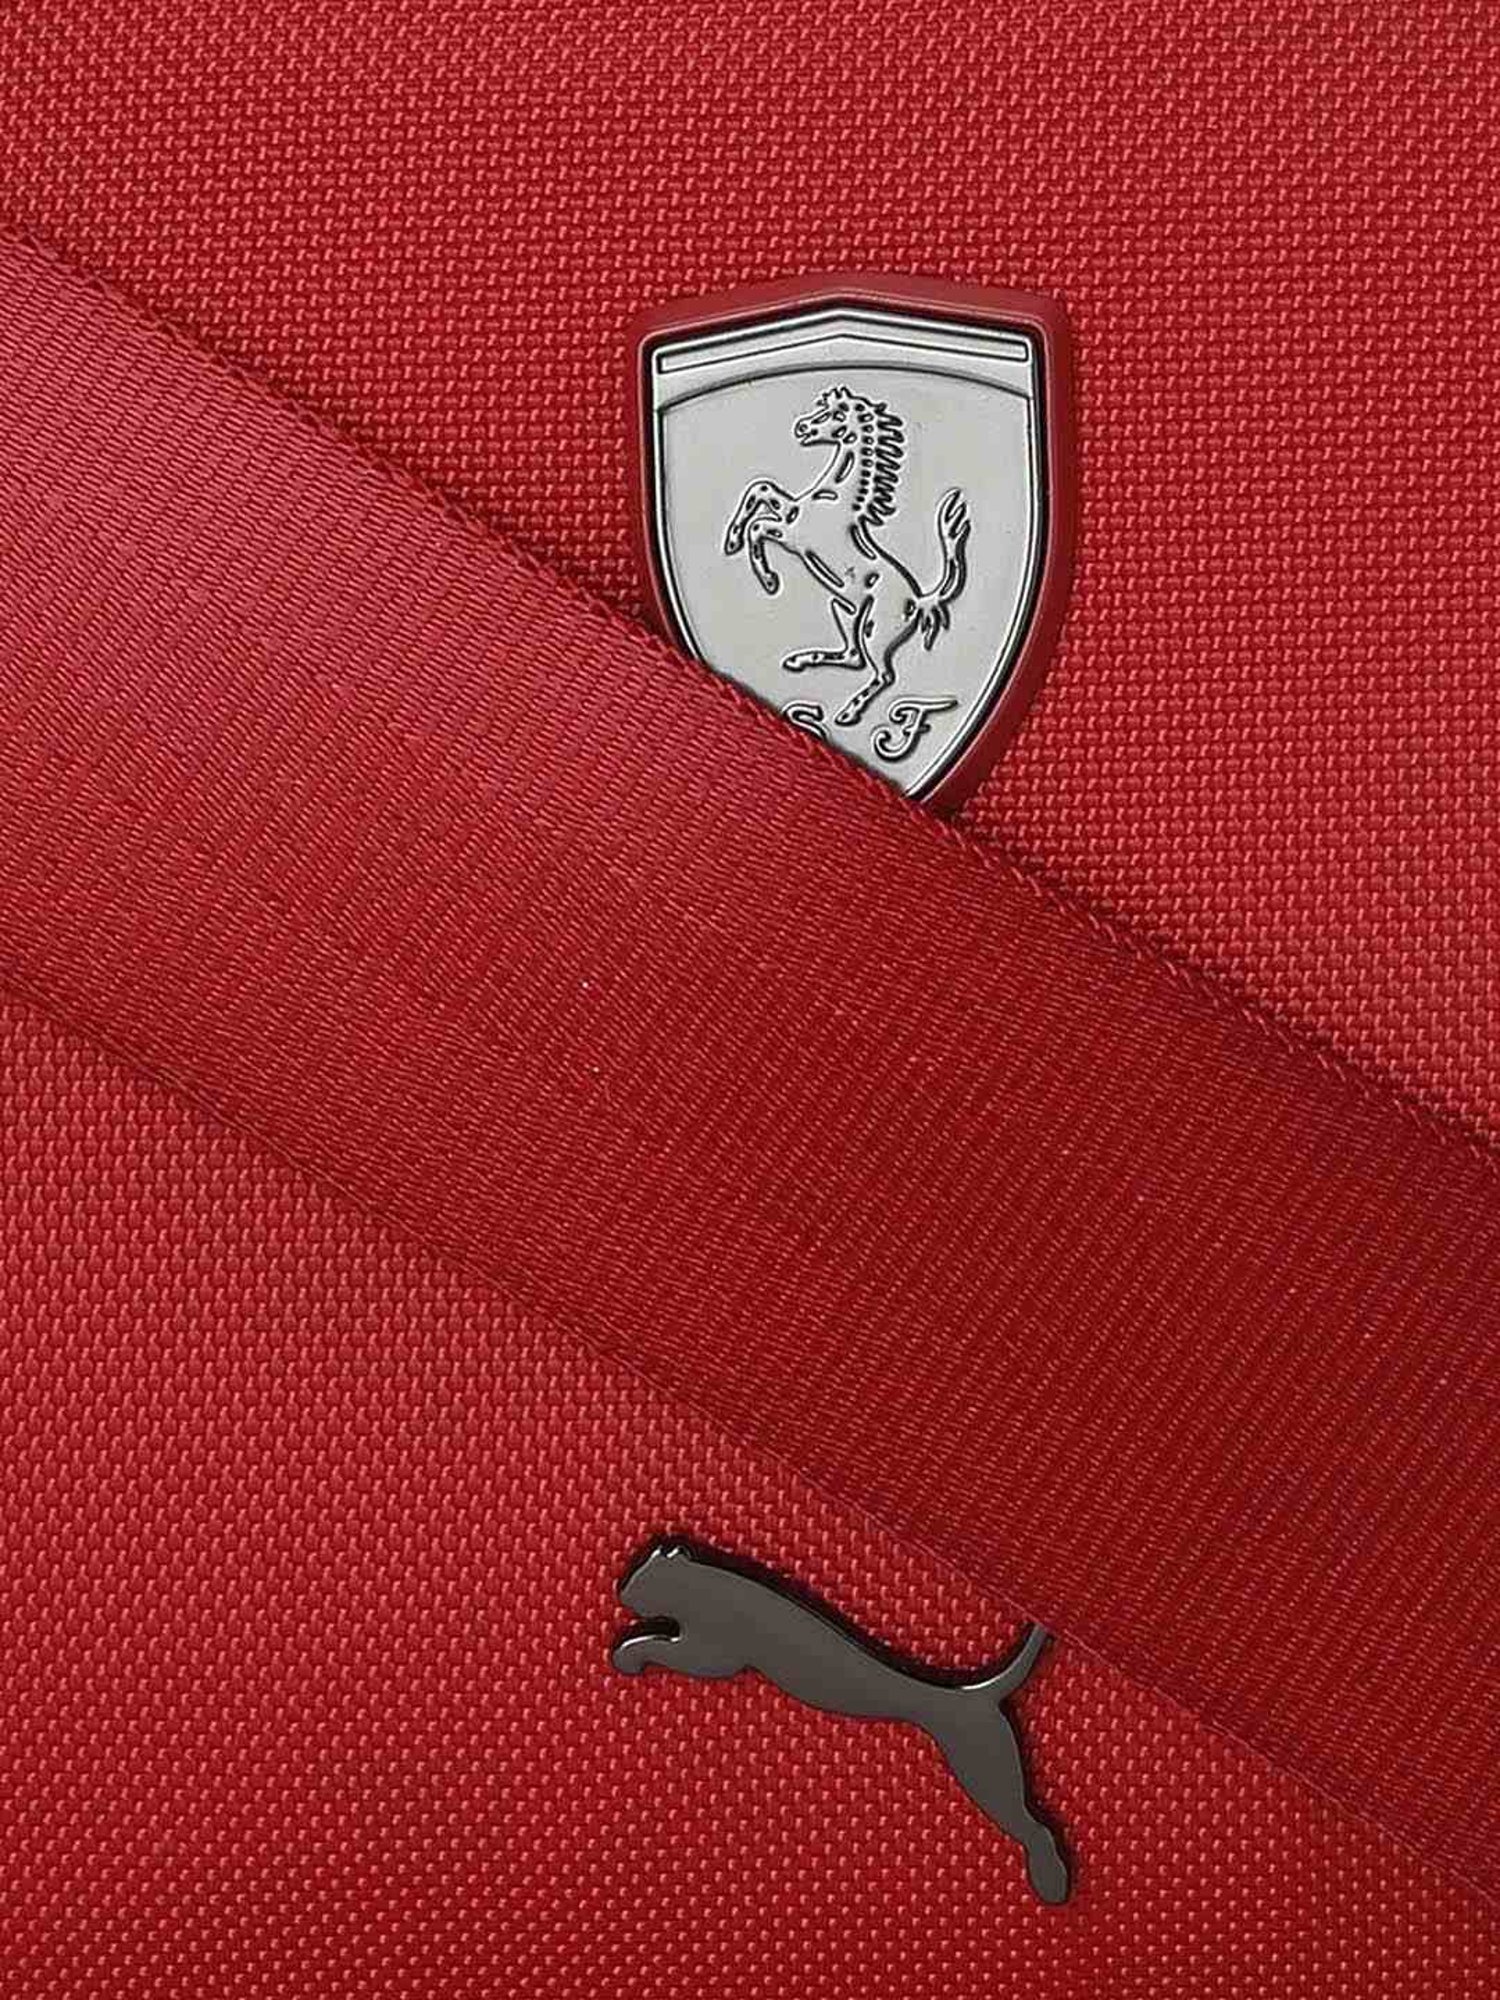 Puma Ferrari wallet, Luxury, Bags & Wallets on Carousell